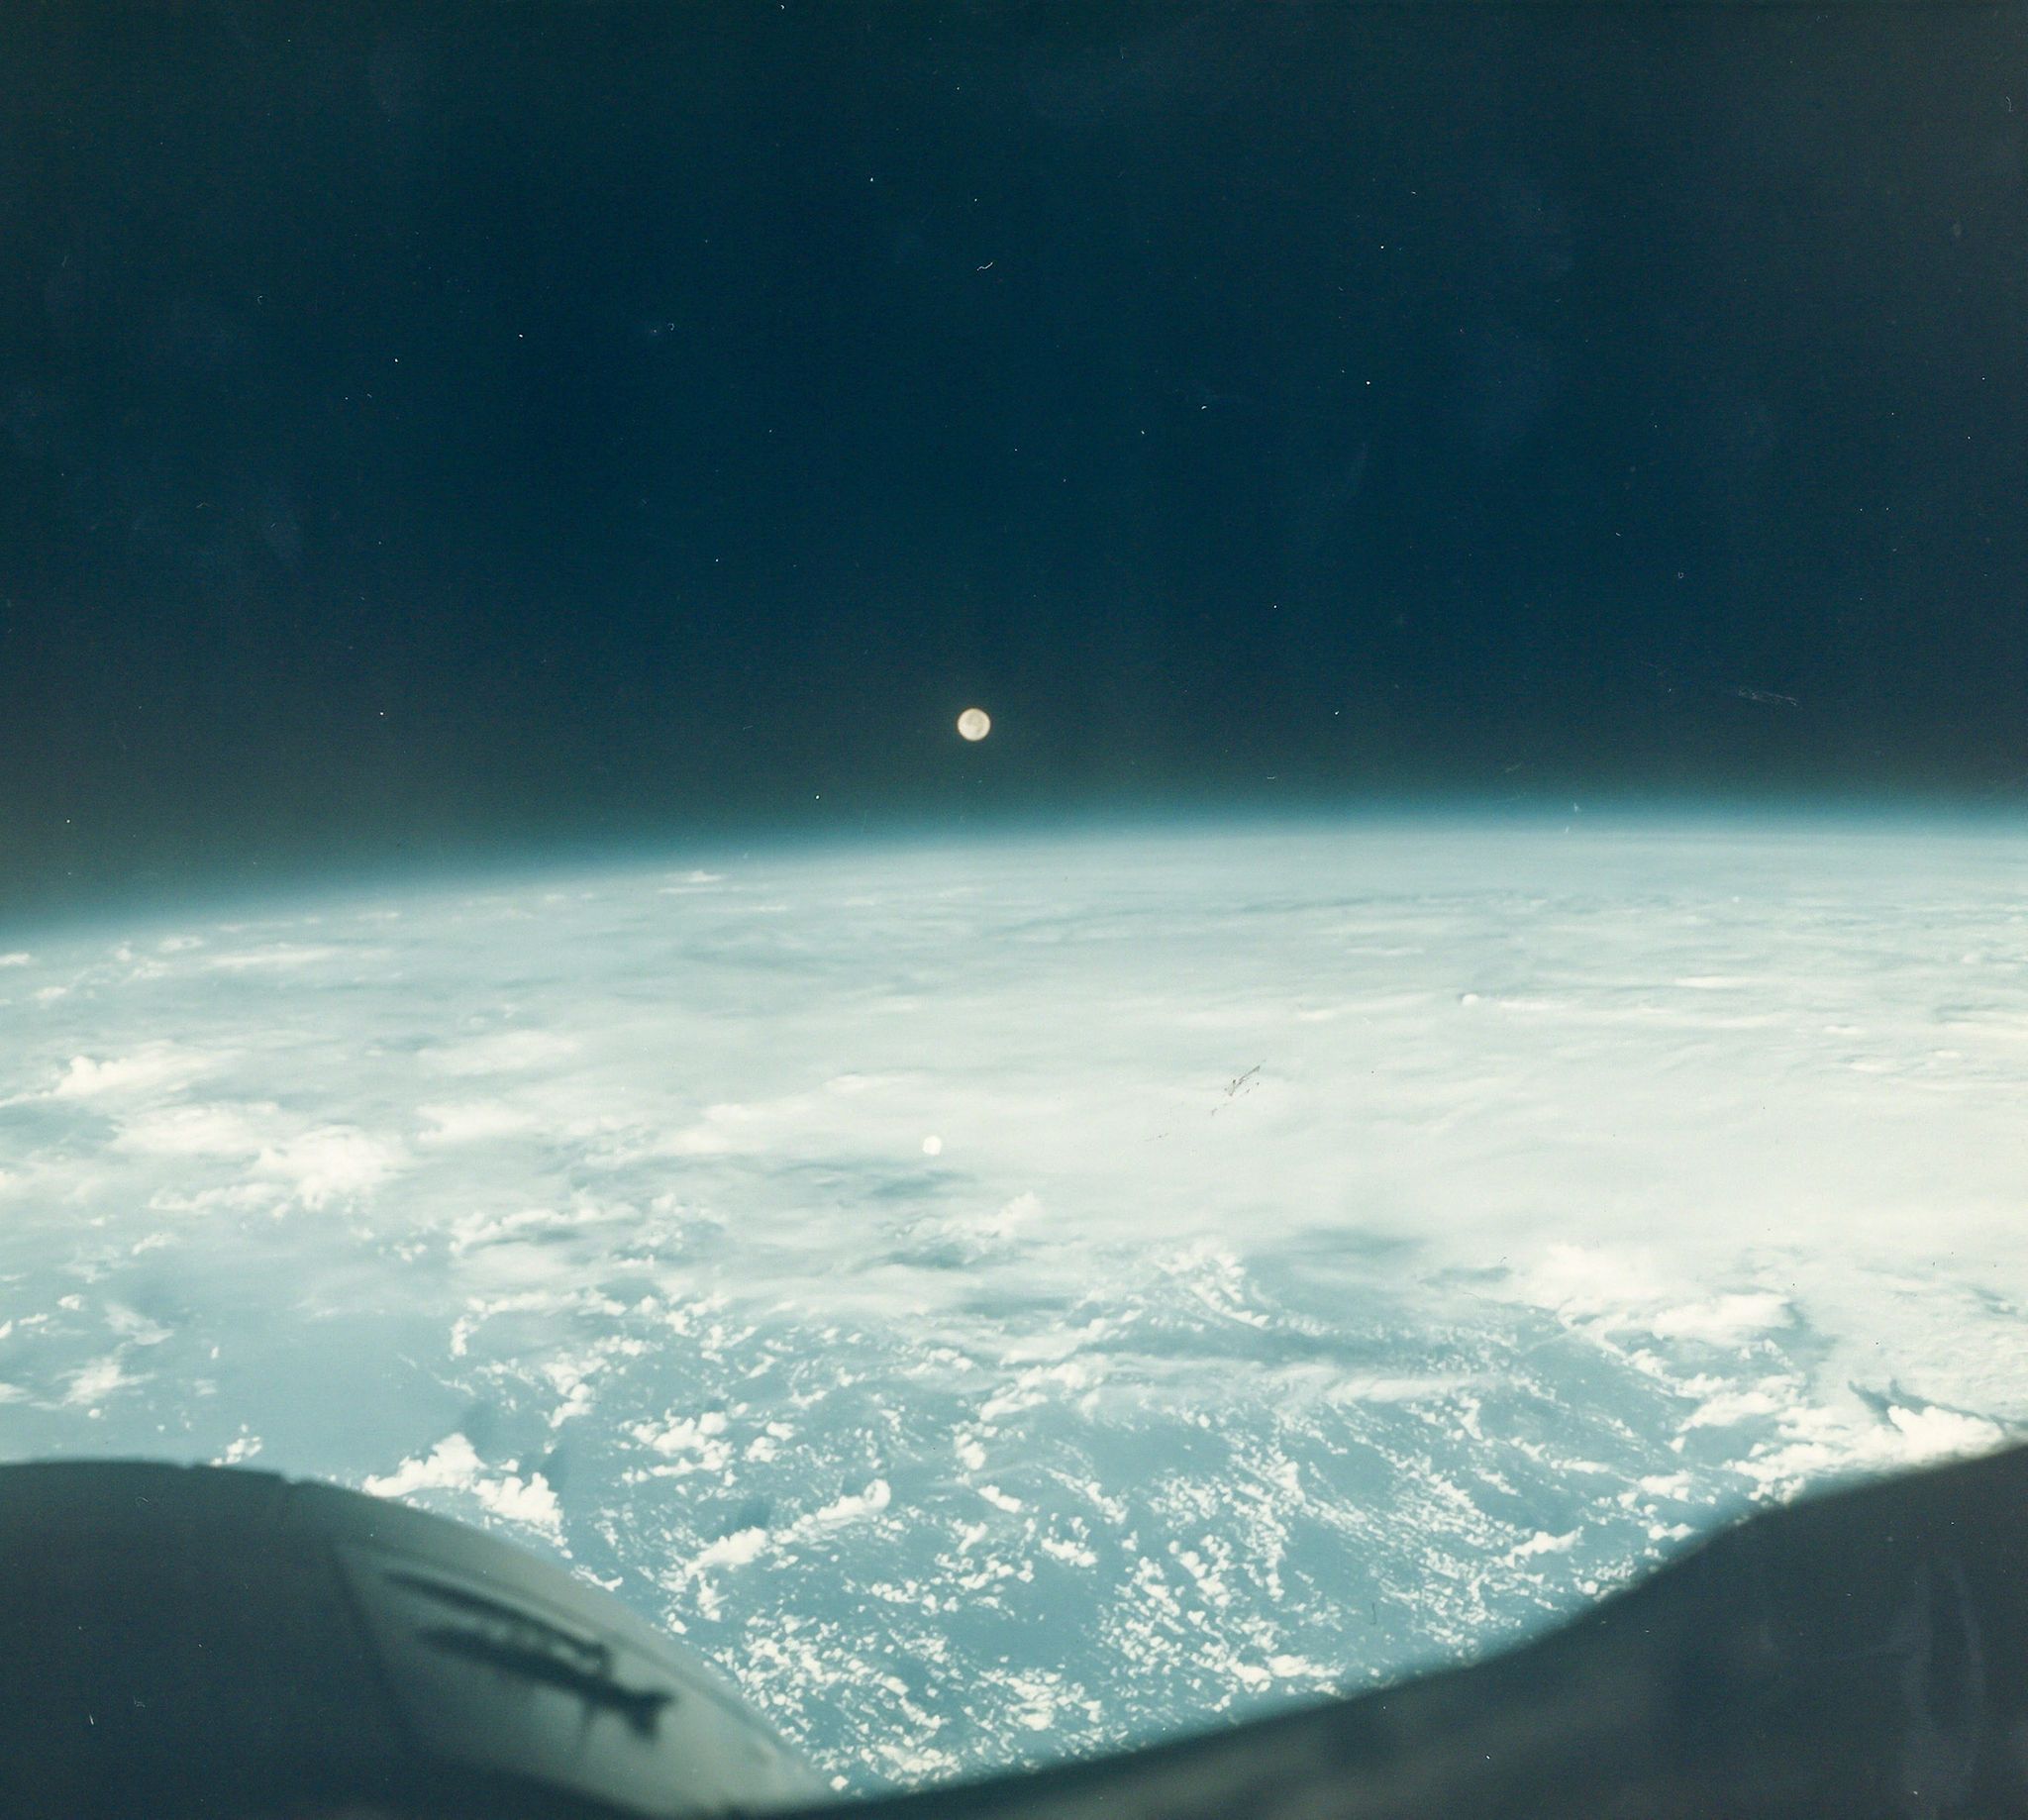 James Lovell - Full Moon rising over the Earth, Gemini 7, December 1965 Vintage chromogenic print on